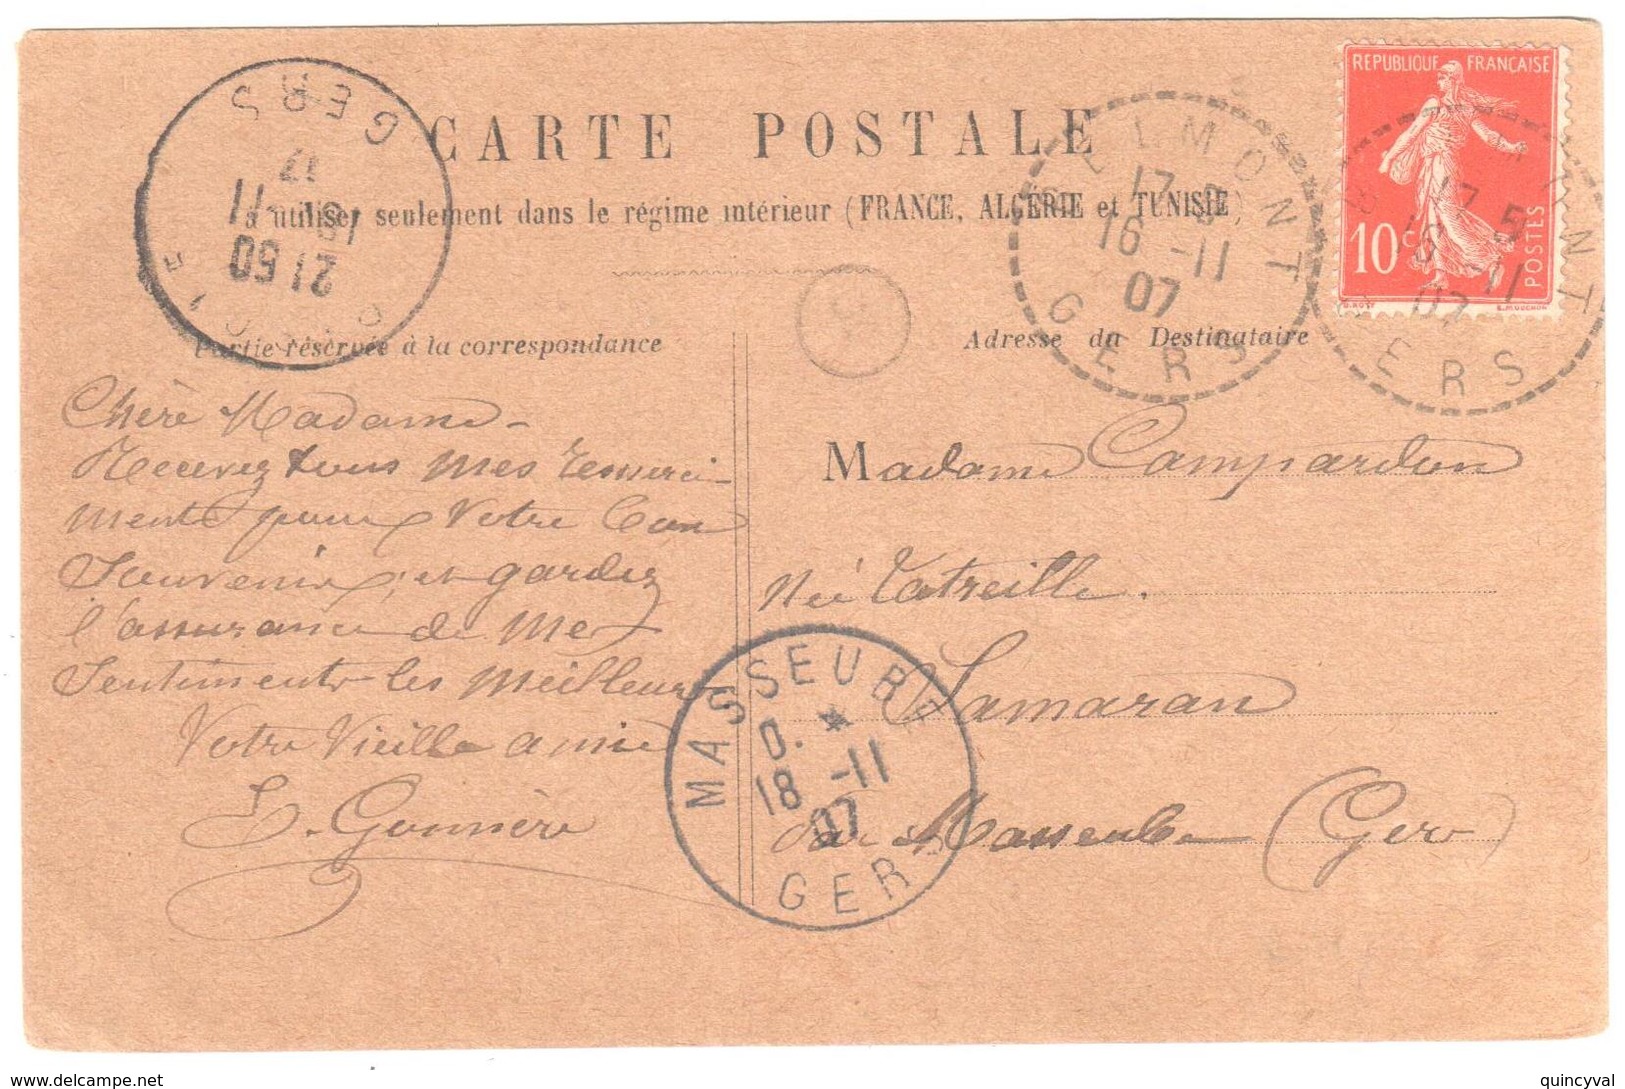 BELMONT Gers Carte Postale 10c Semeuse Yv 138 Ob 16 11 1907 Dest Masseube Griffe Facteur Recette Distribution Lautier B4 - 1877-1920: Semi-Moderne